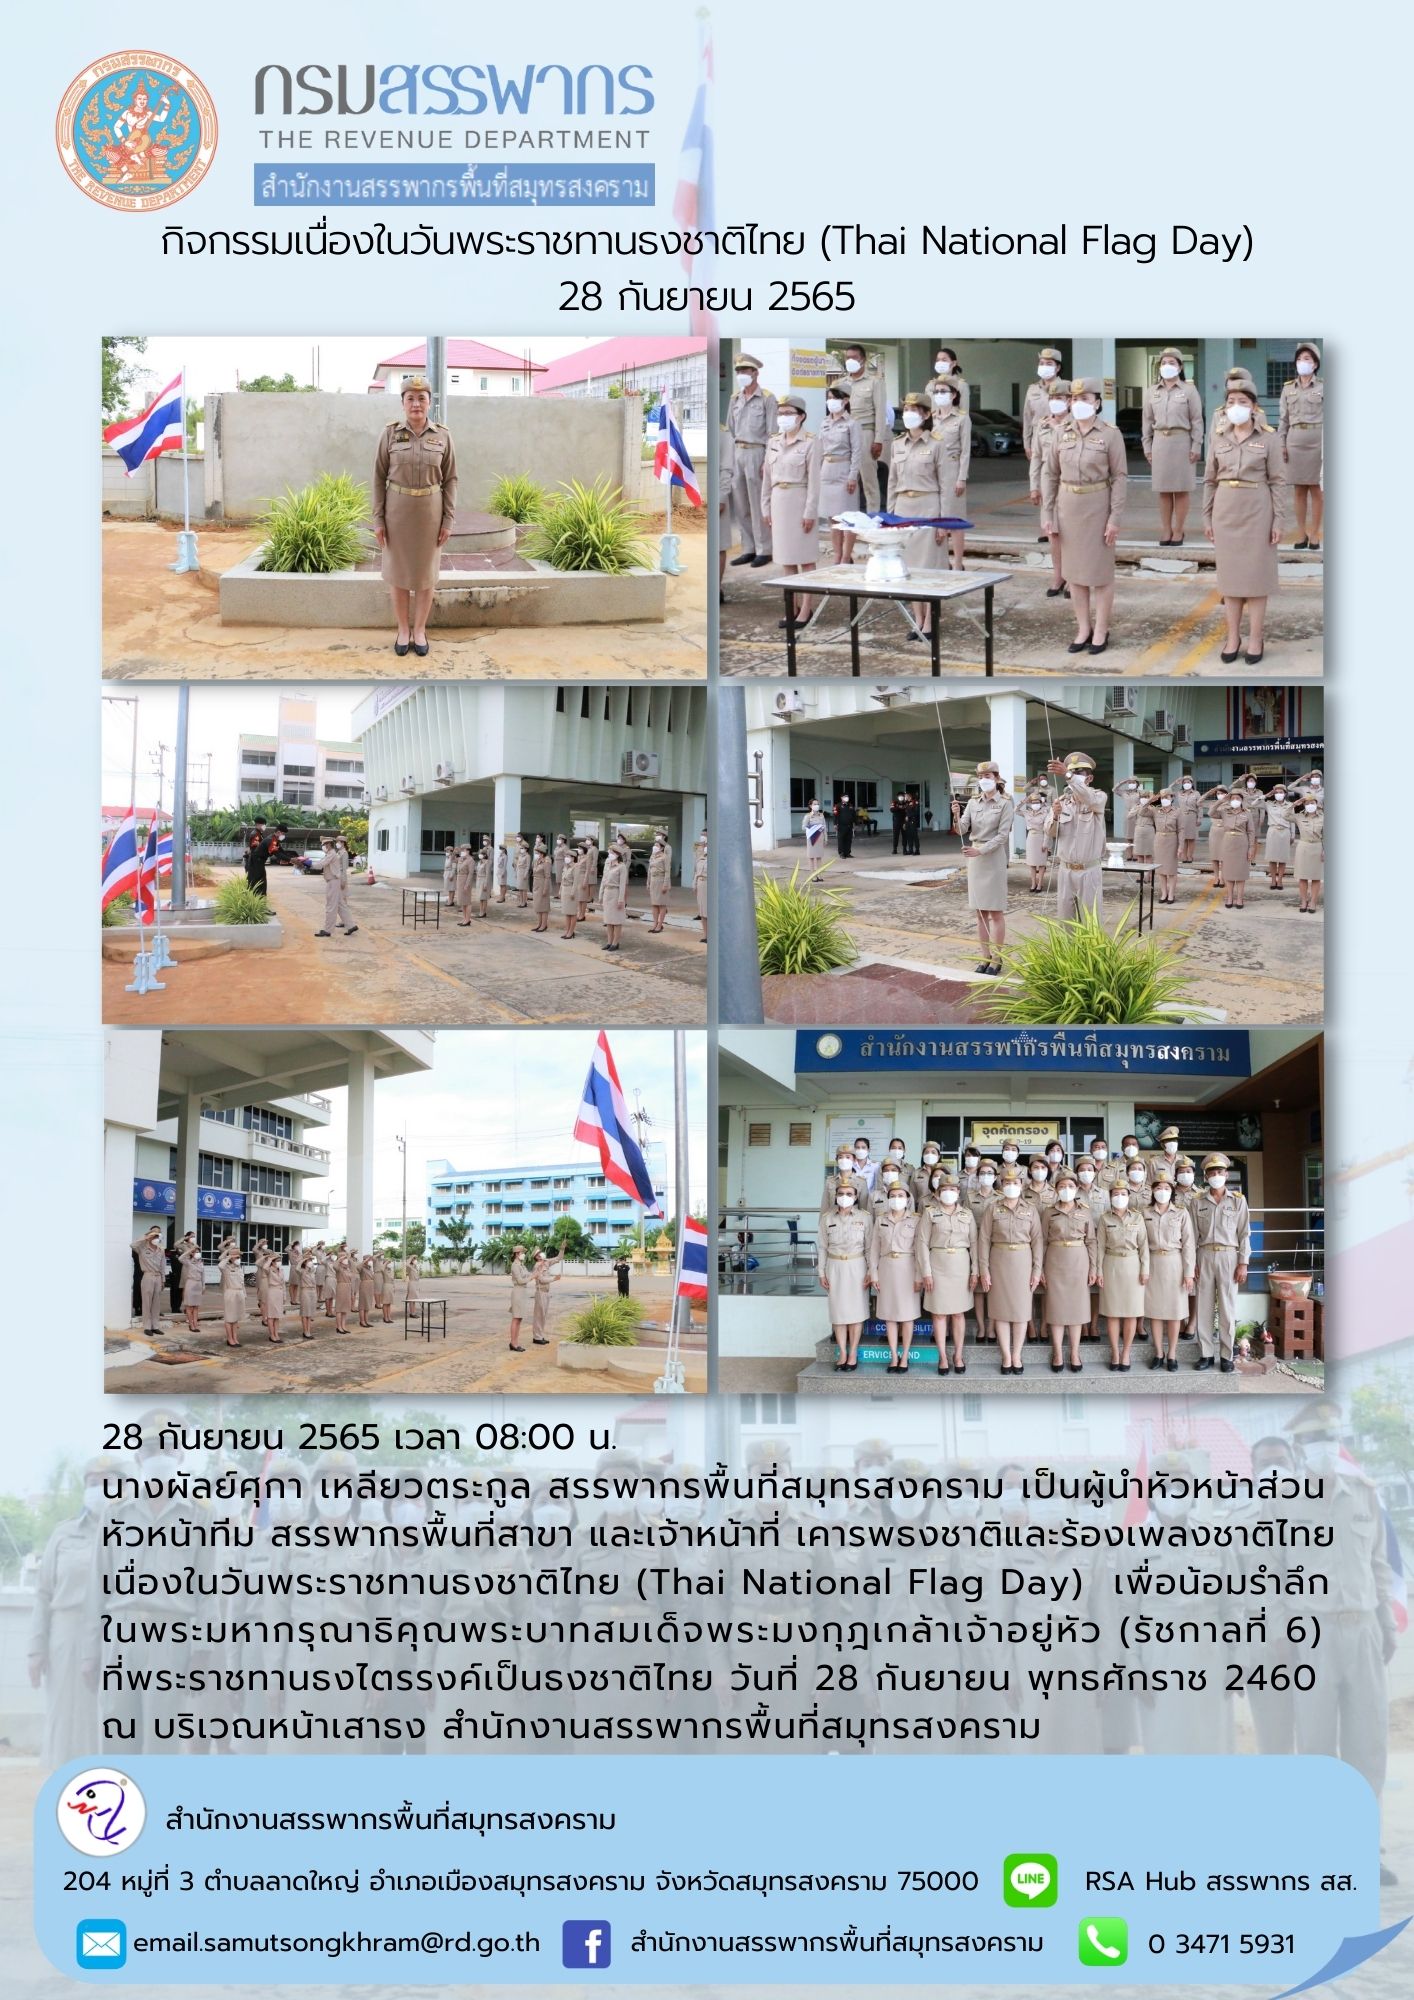 นางผัลย์ศุกา เหลียวตระกูล สรรพากรพื้นที่สมุทรสงคราม พร้อมด้วยเจ้าหน้าที่ในสังกัด เคารพธงชาติและร้องเพลงชาติไทยเนื่องในวันพระราชทานธงชาติไทย (Thai Nation Flag Day) ณ สำนักงานสรรพากรพื้นที่สมุทรสงคราม